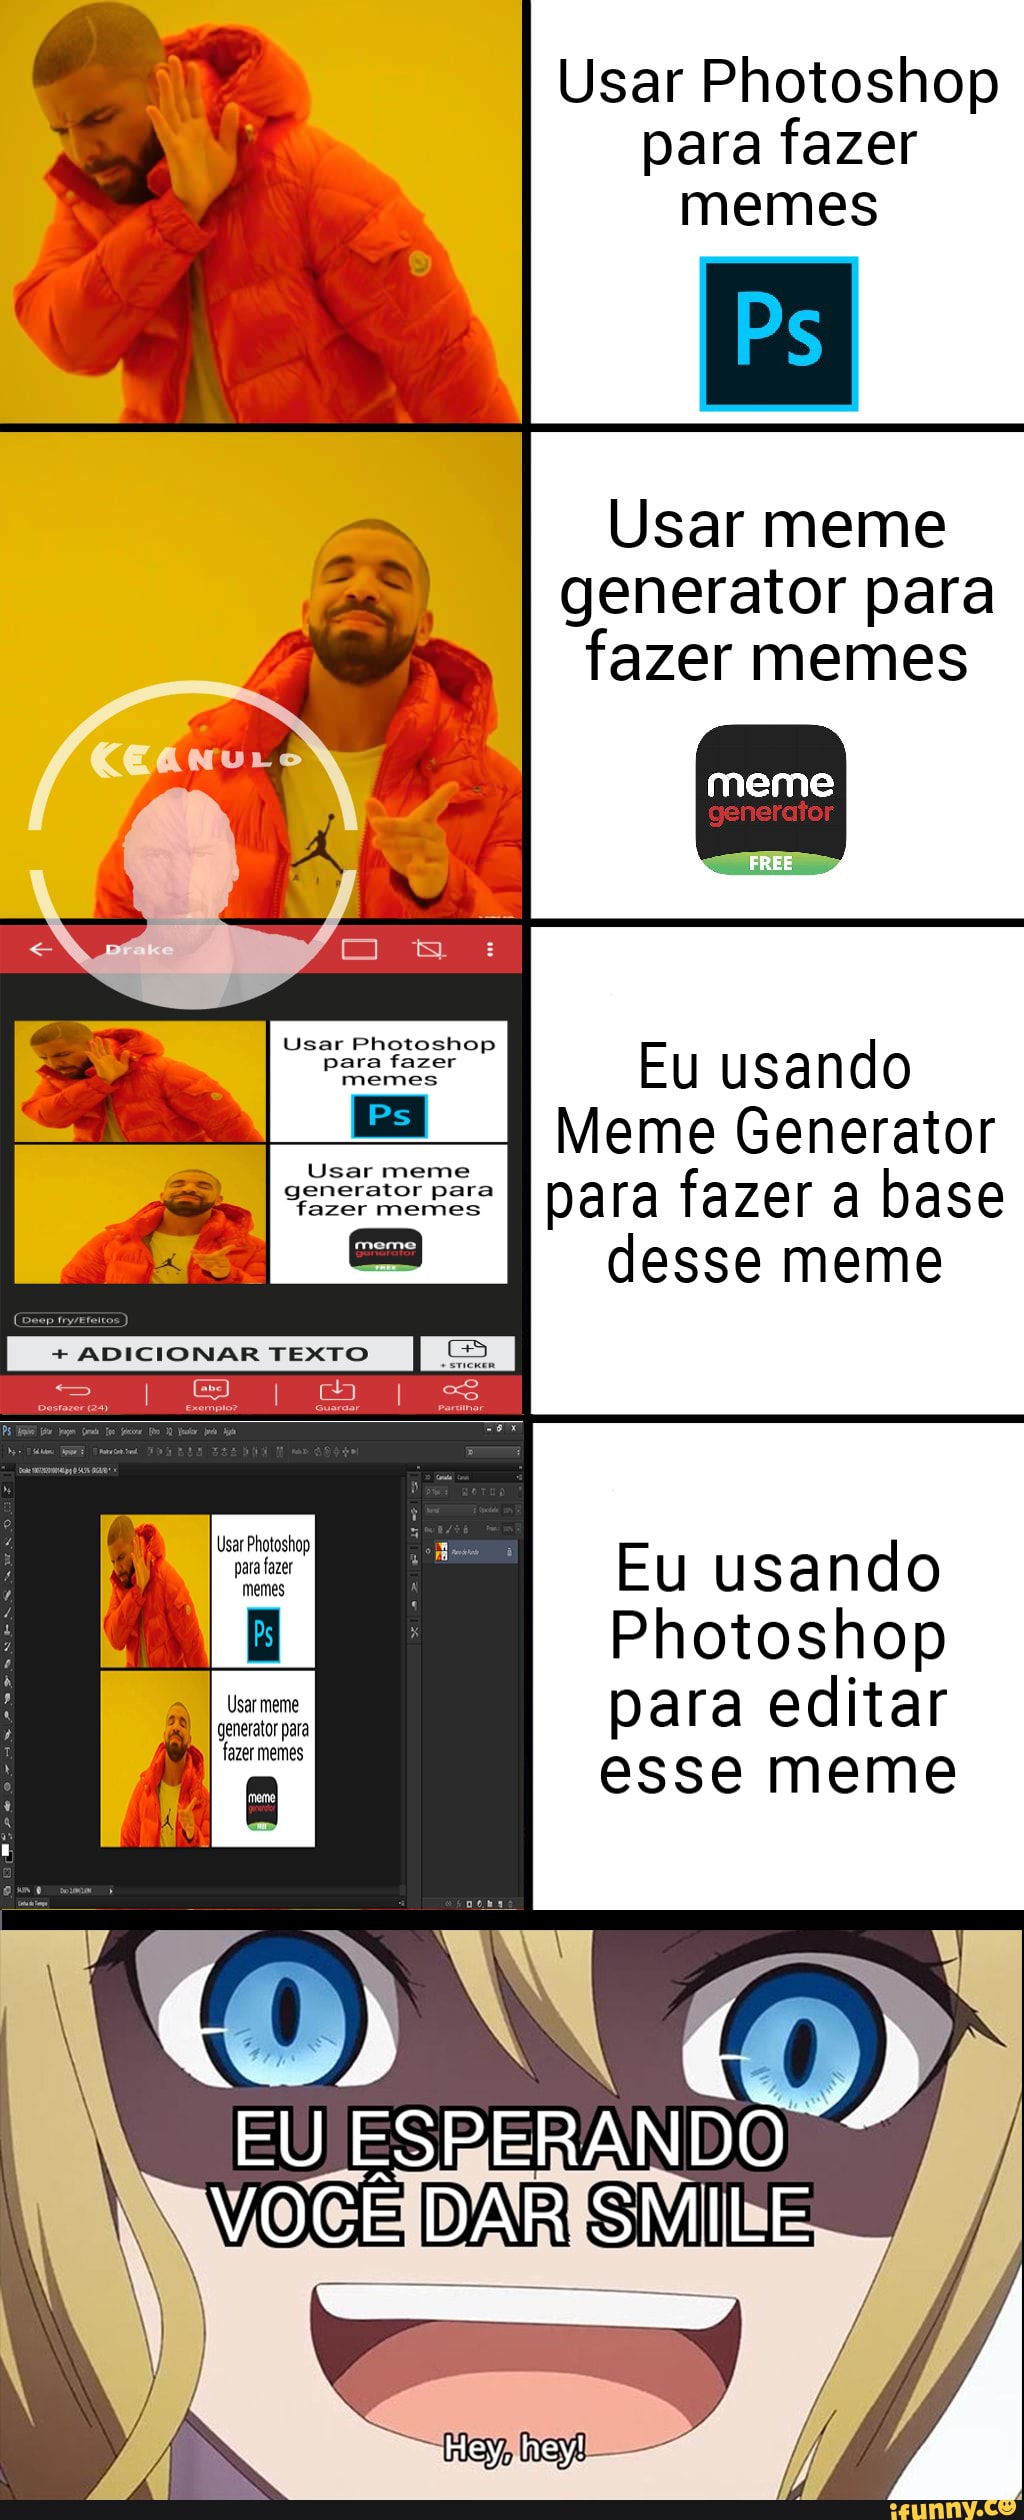 Meme generator generator MAS AÍ EU FA E UM MEME SOBRE Não FAZER MEMES COM  AS BASES DO MEME GENERATOR - iFunny Brazil